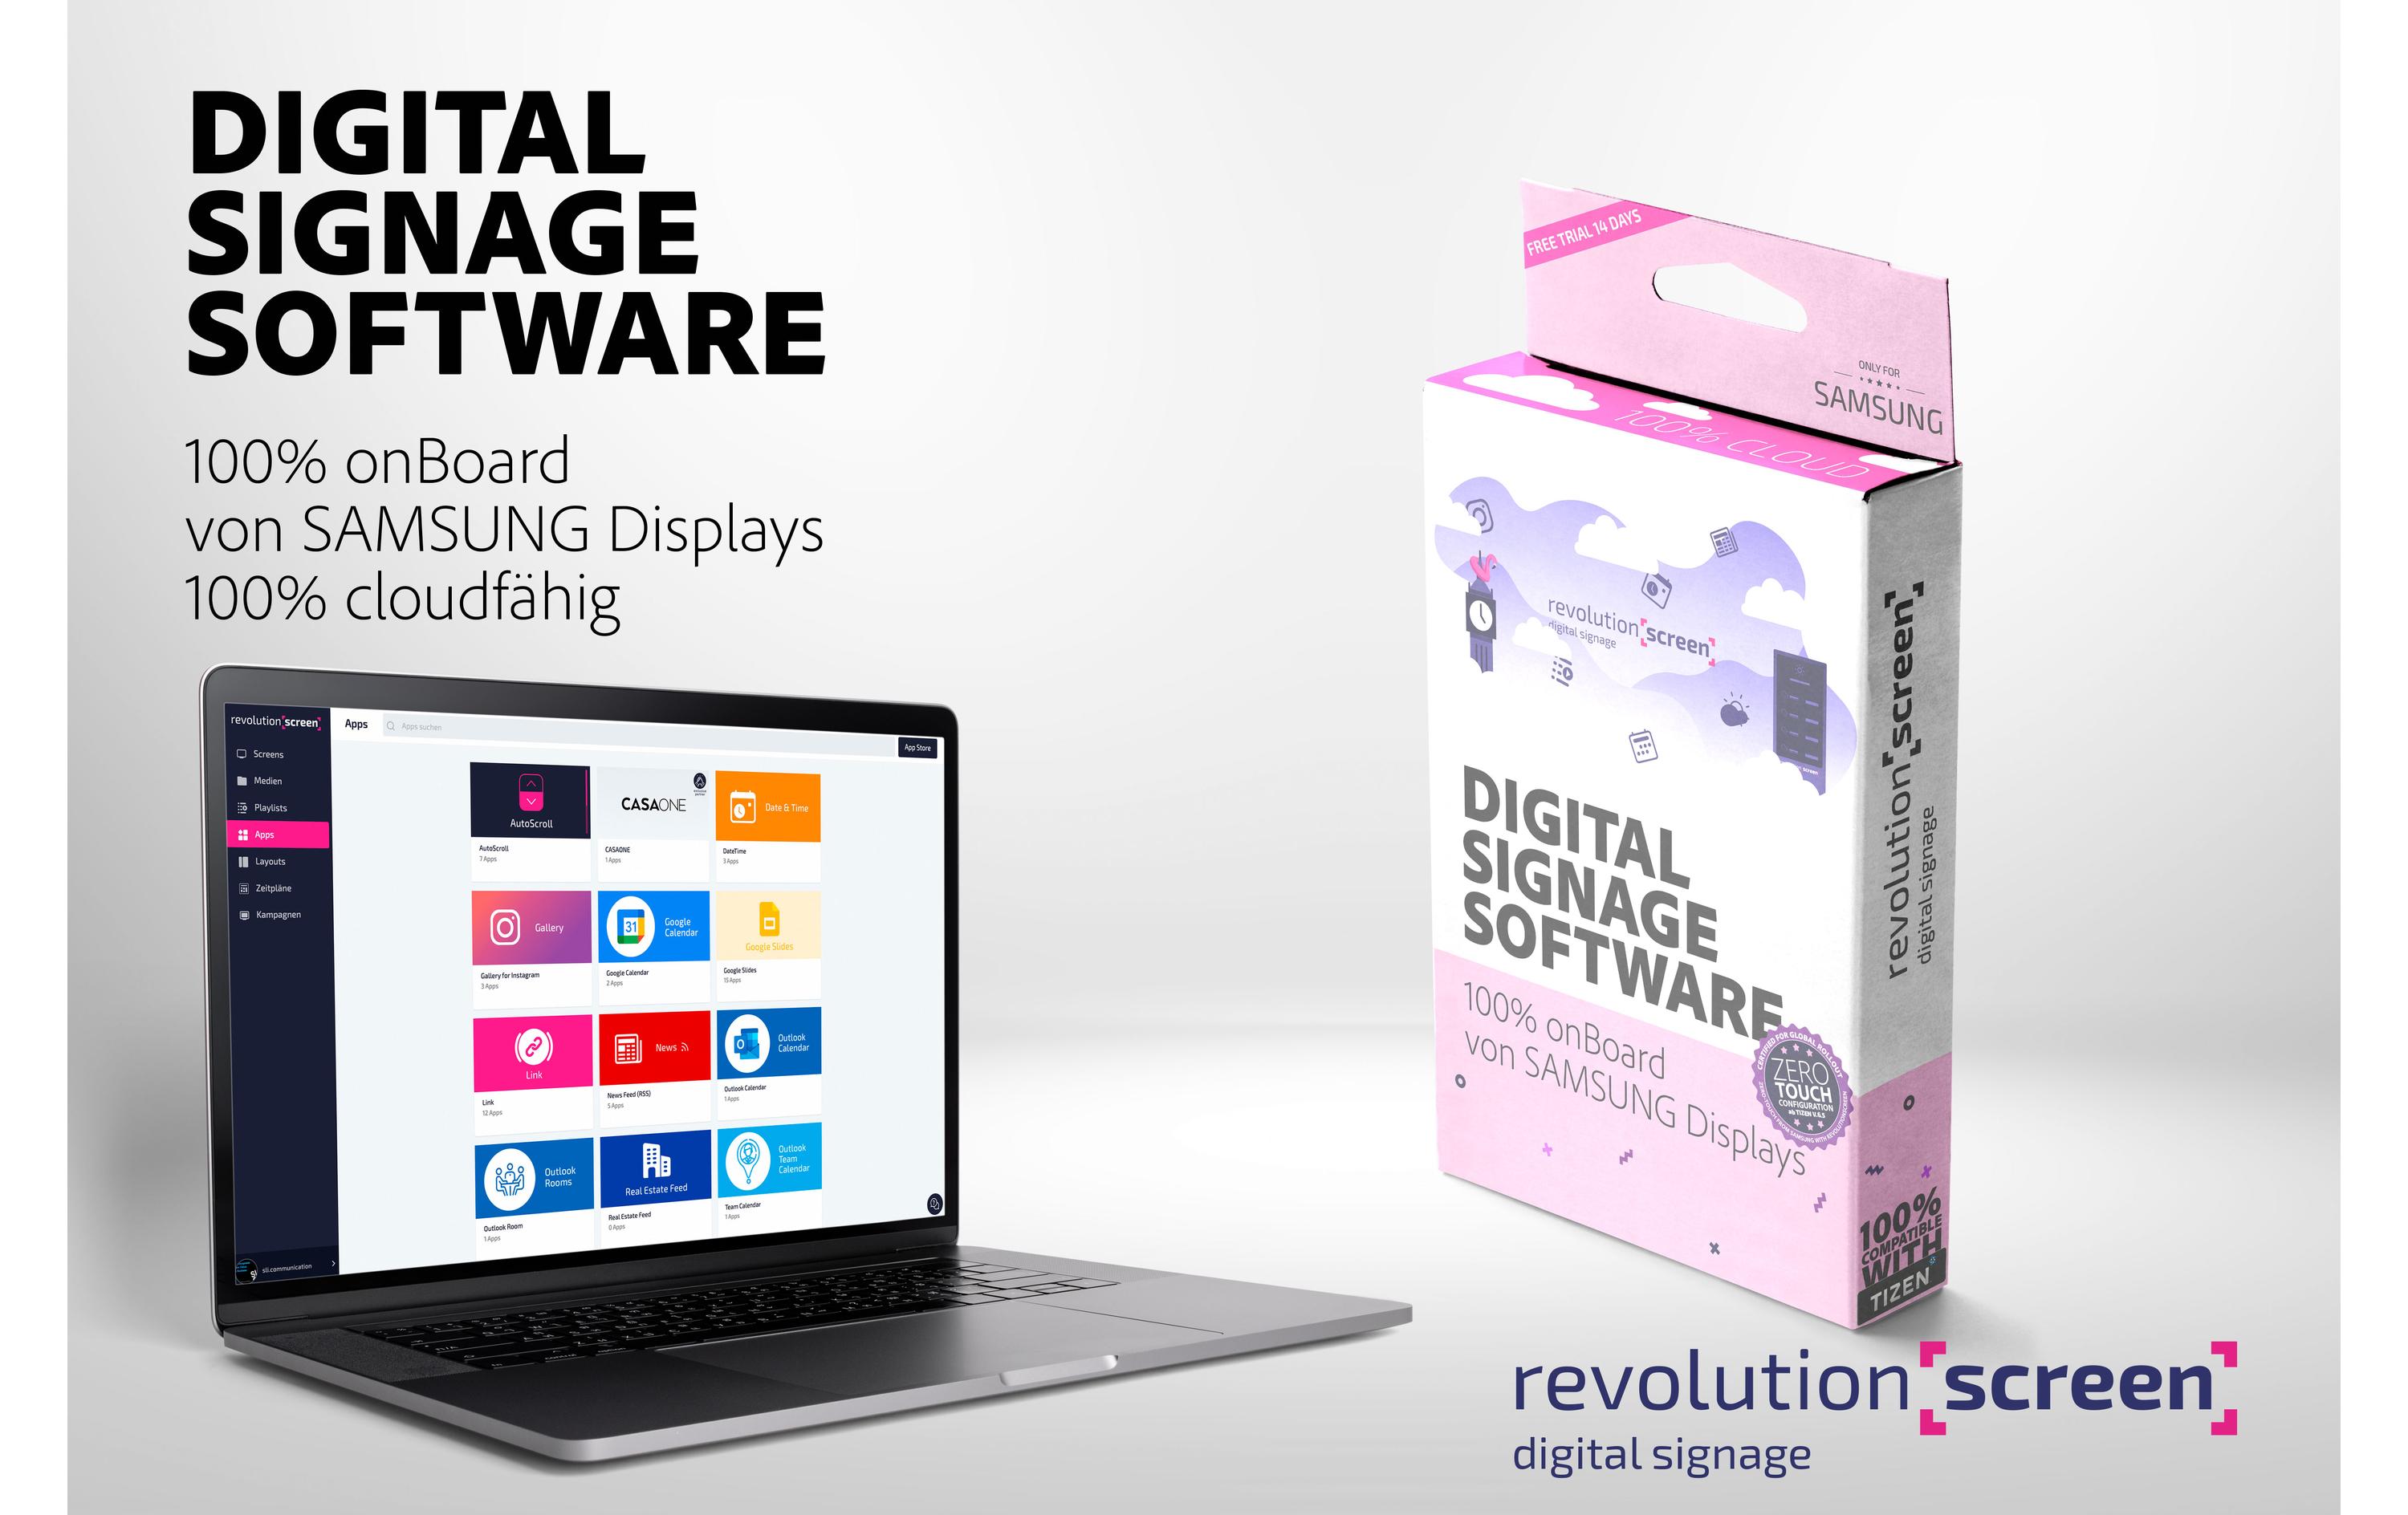 revolutionSCREEN Digital Signage Software revolutionScreen Basic 1 Jahr